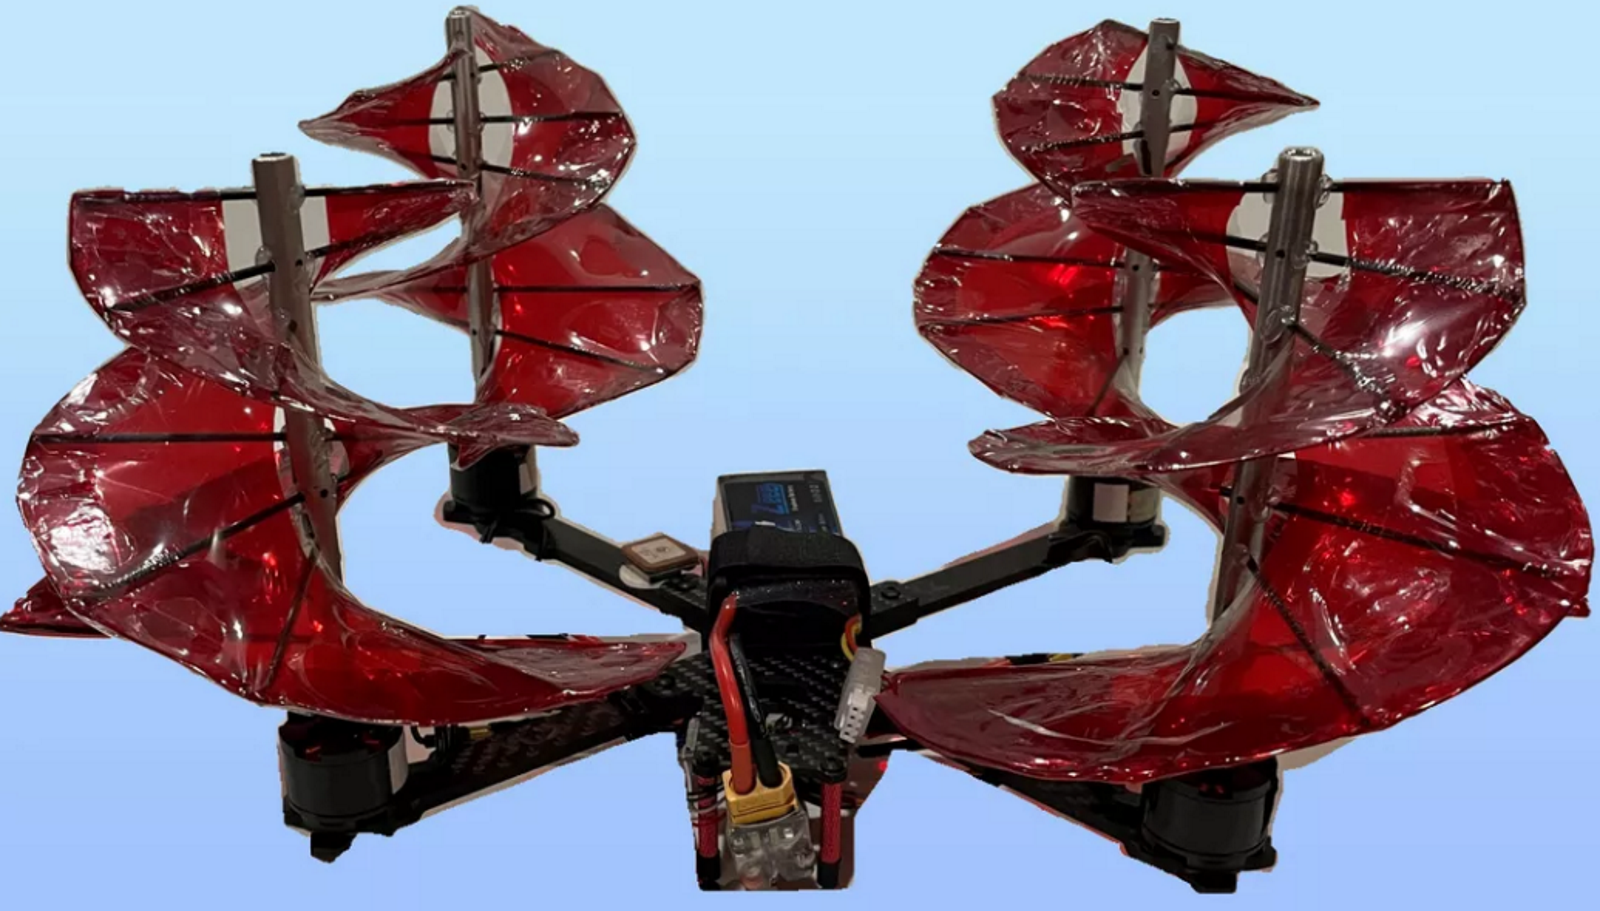 Les hélices du drone ont été remplacées avec le système de vis aérienne inventé par Léonard de Vinci. © Université du Maryland